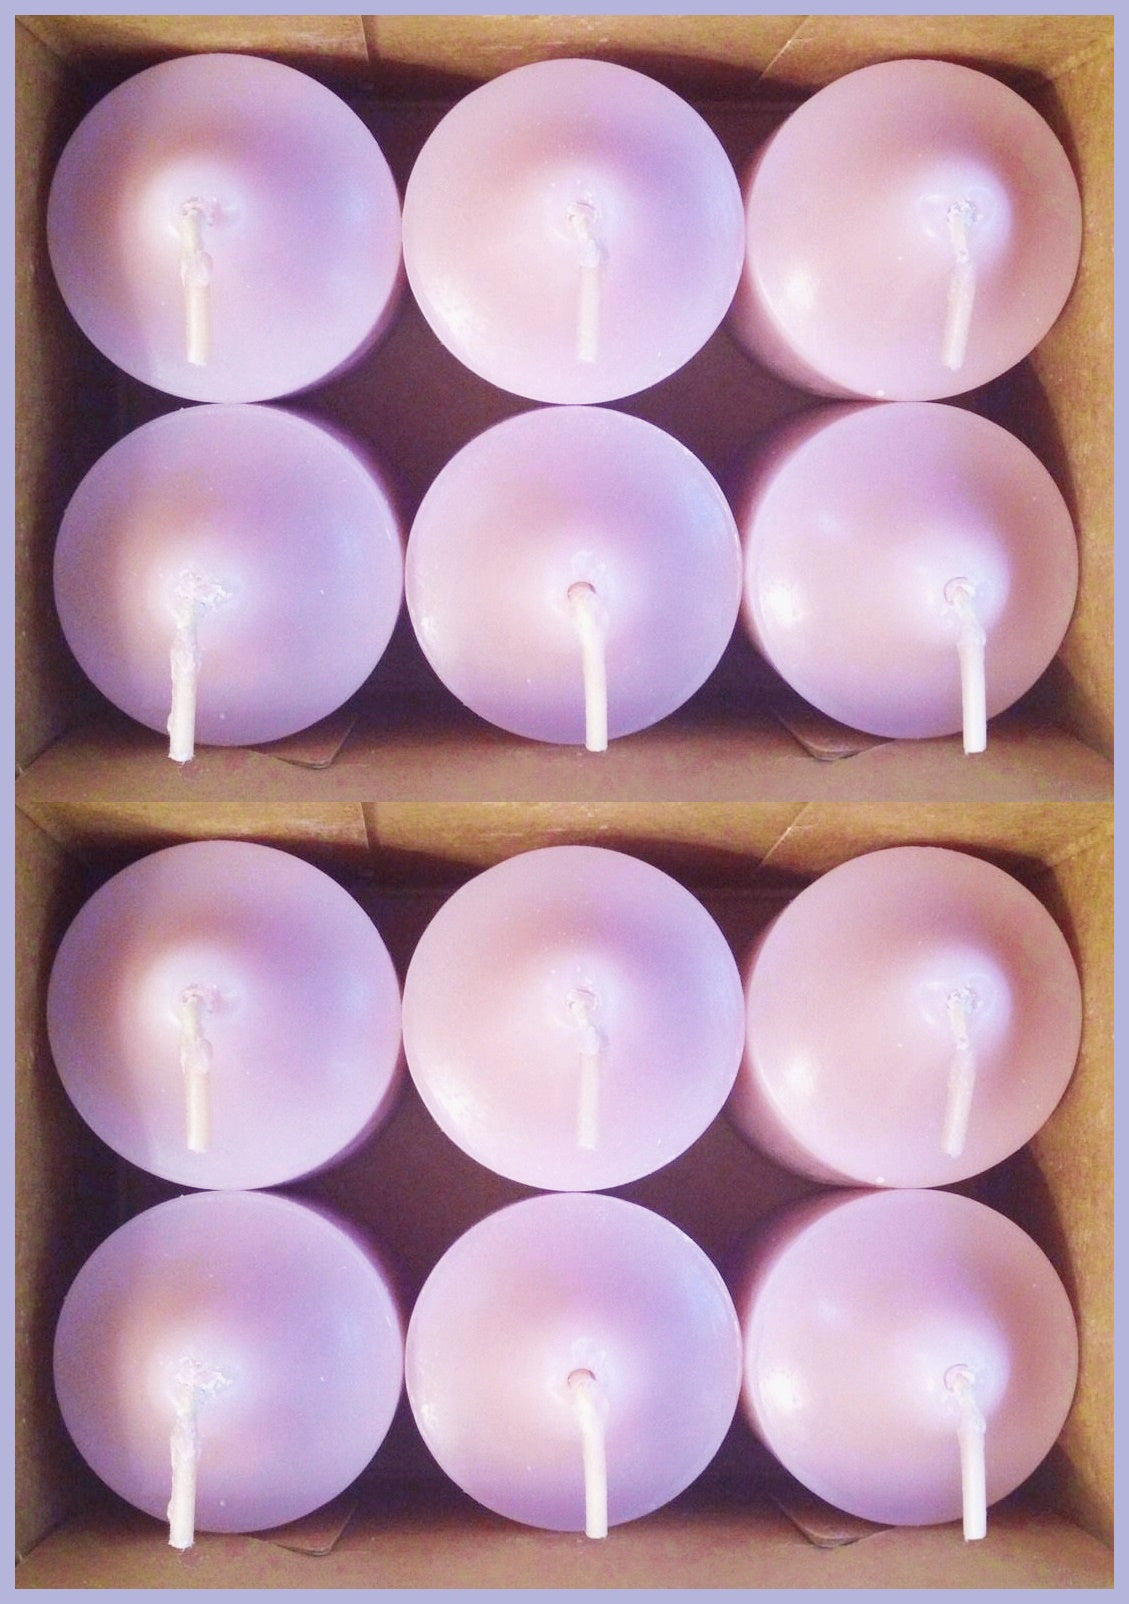 PartyLite 1 DOZEN Votive Wax Candles - 2 BOXES = 12 VOTIVES ~ LAVENDER FLOWER